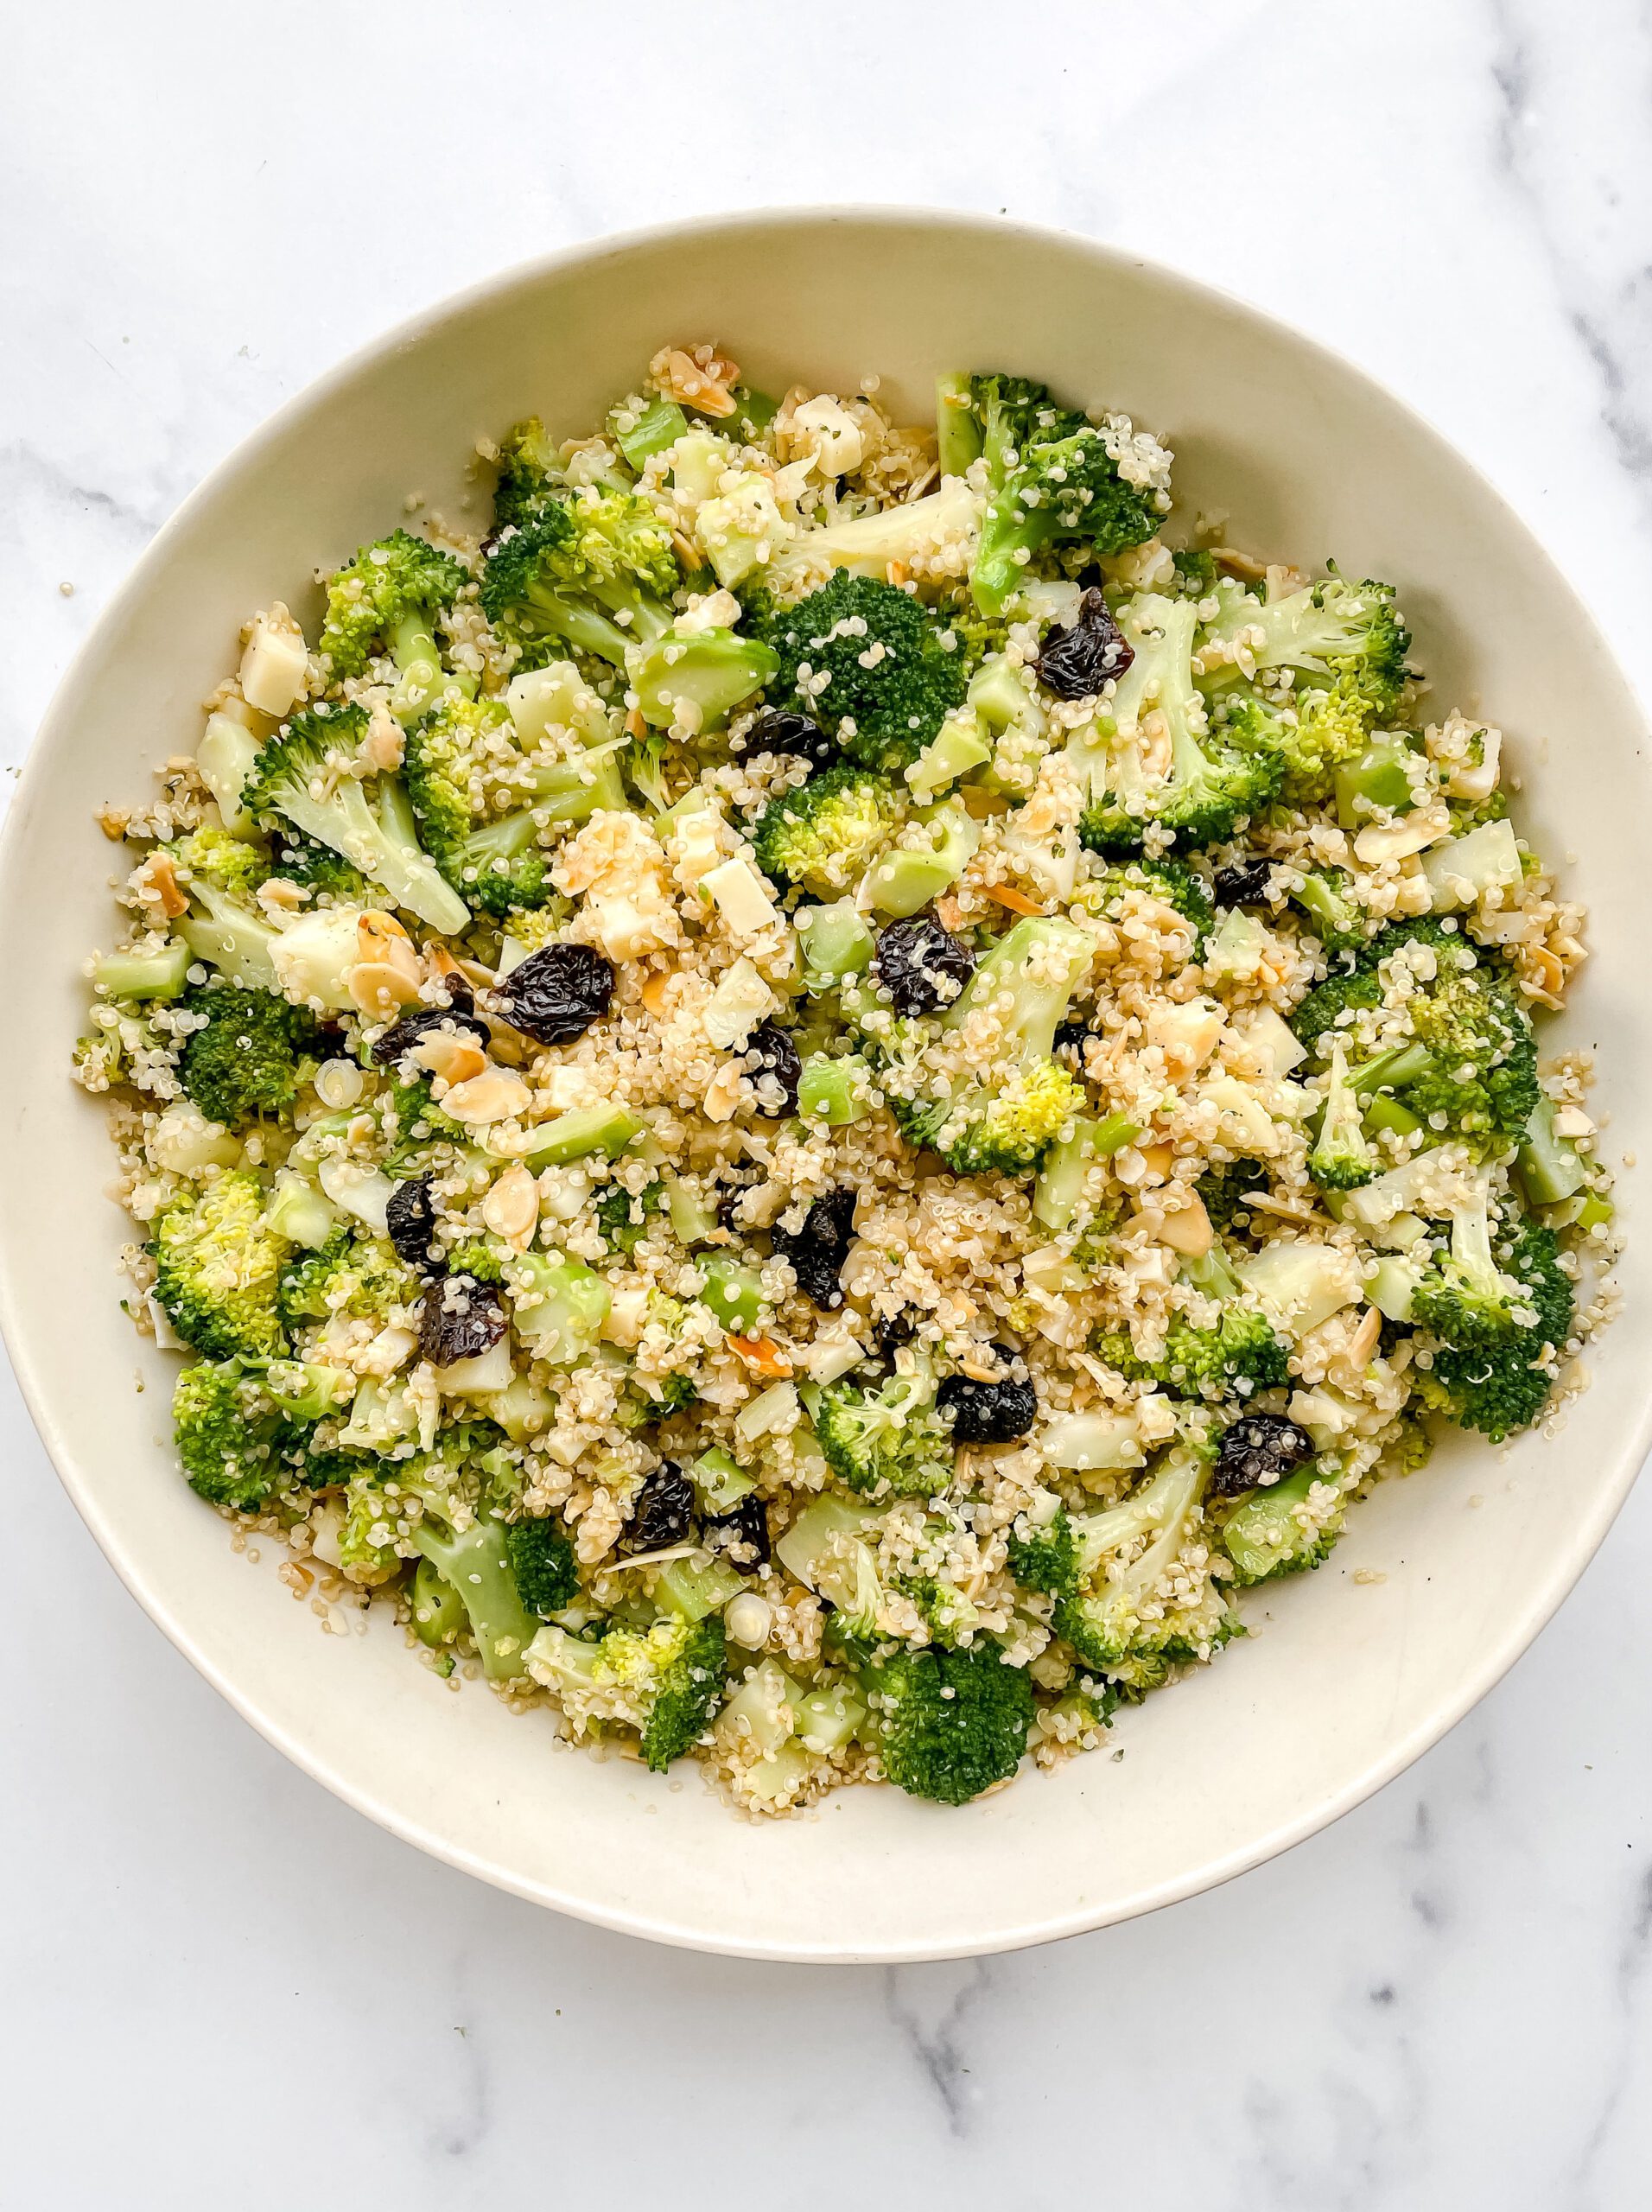 Revolutionary Broccoli Salad (Gluten-Free, Vegetarian)